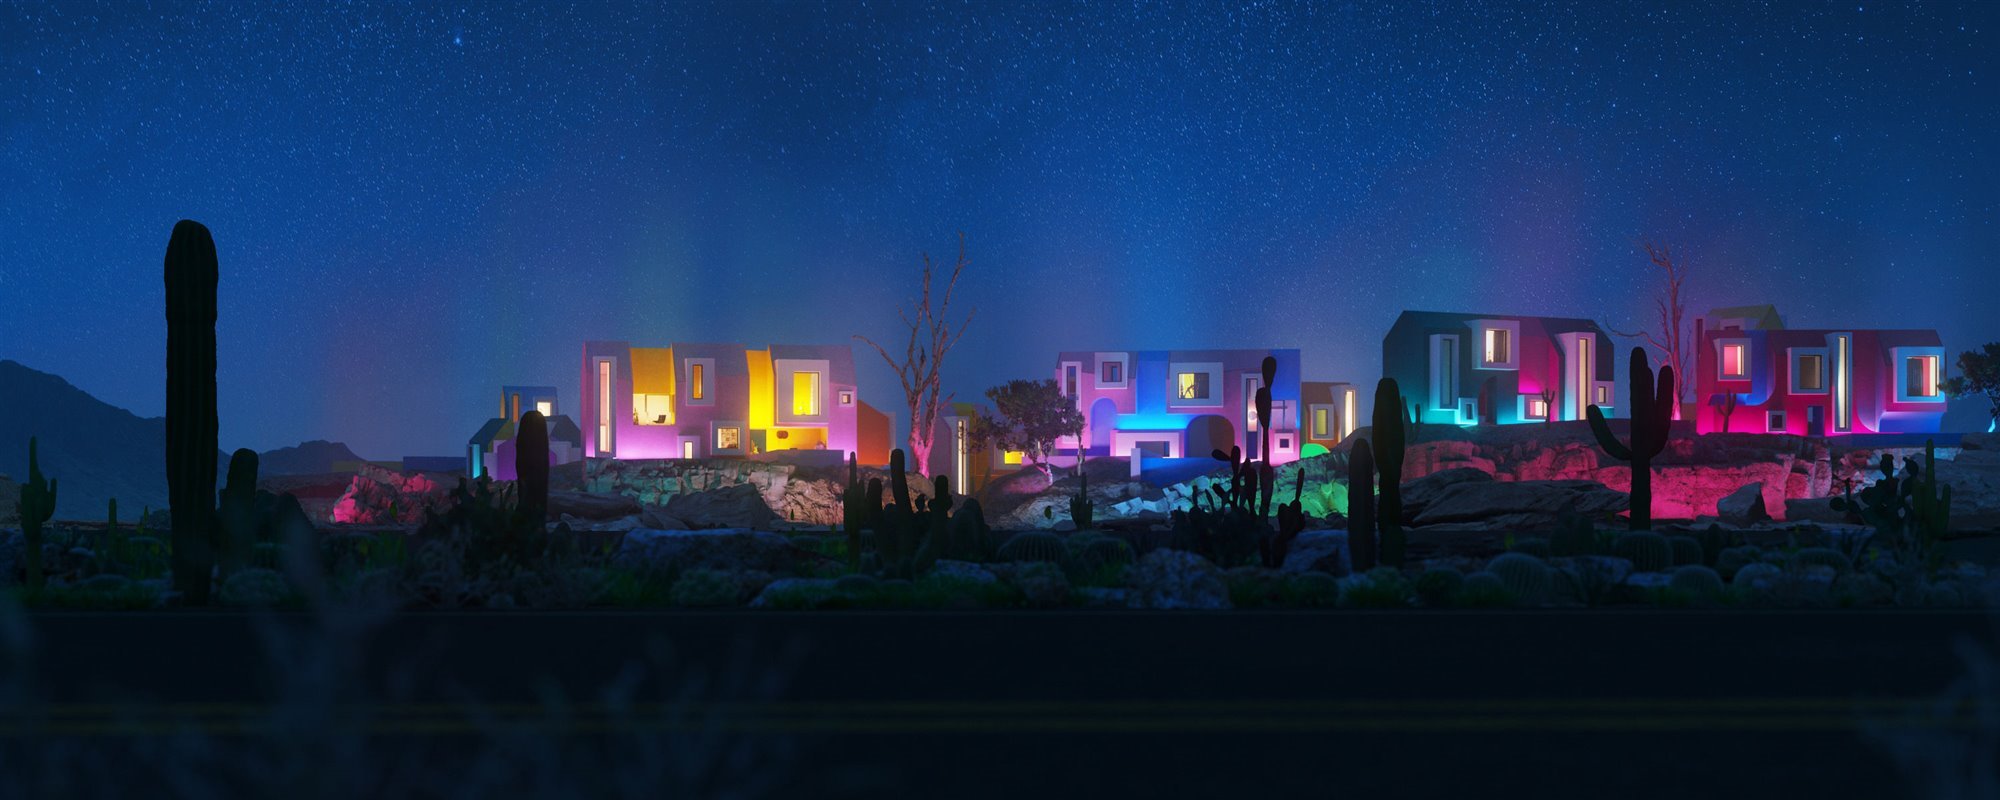 Sonora Art Village by night